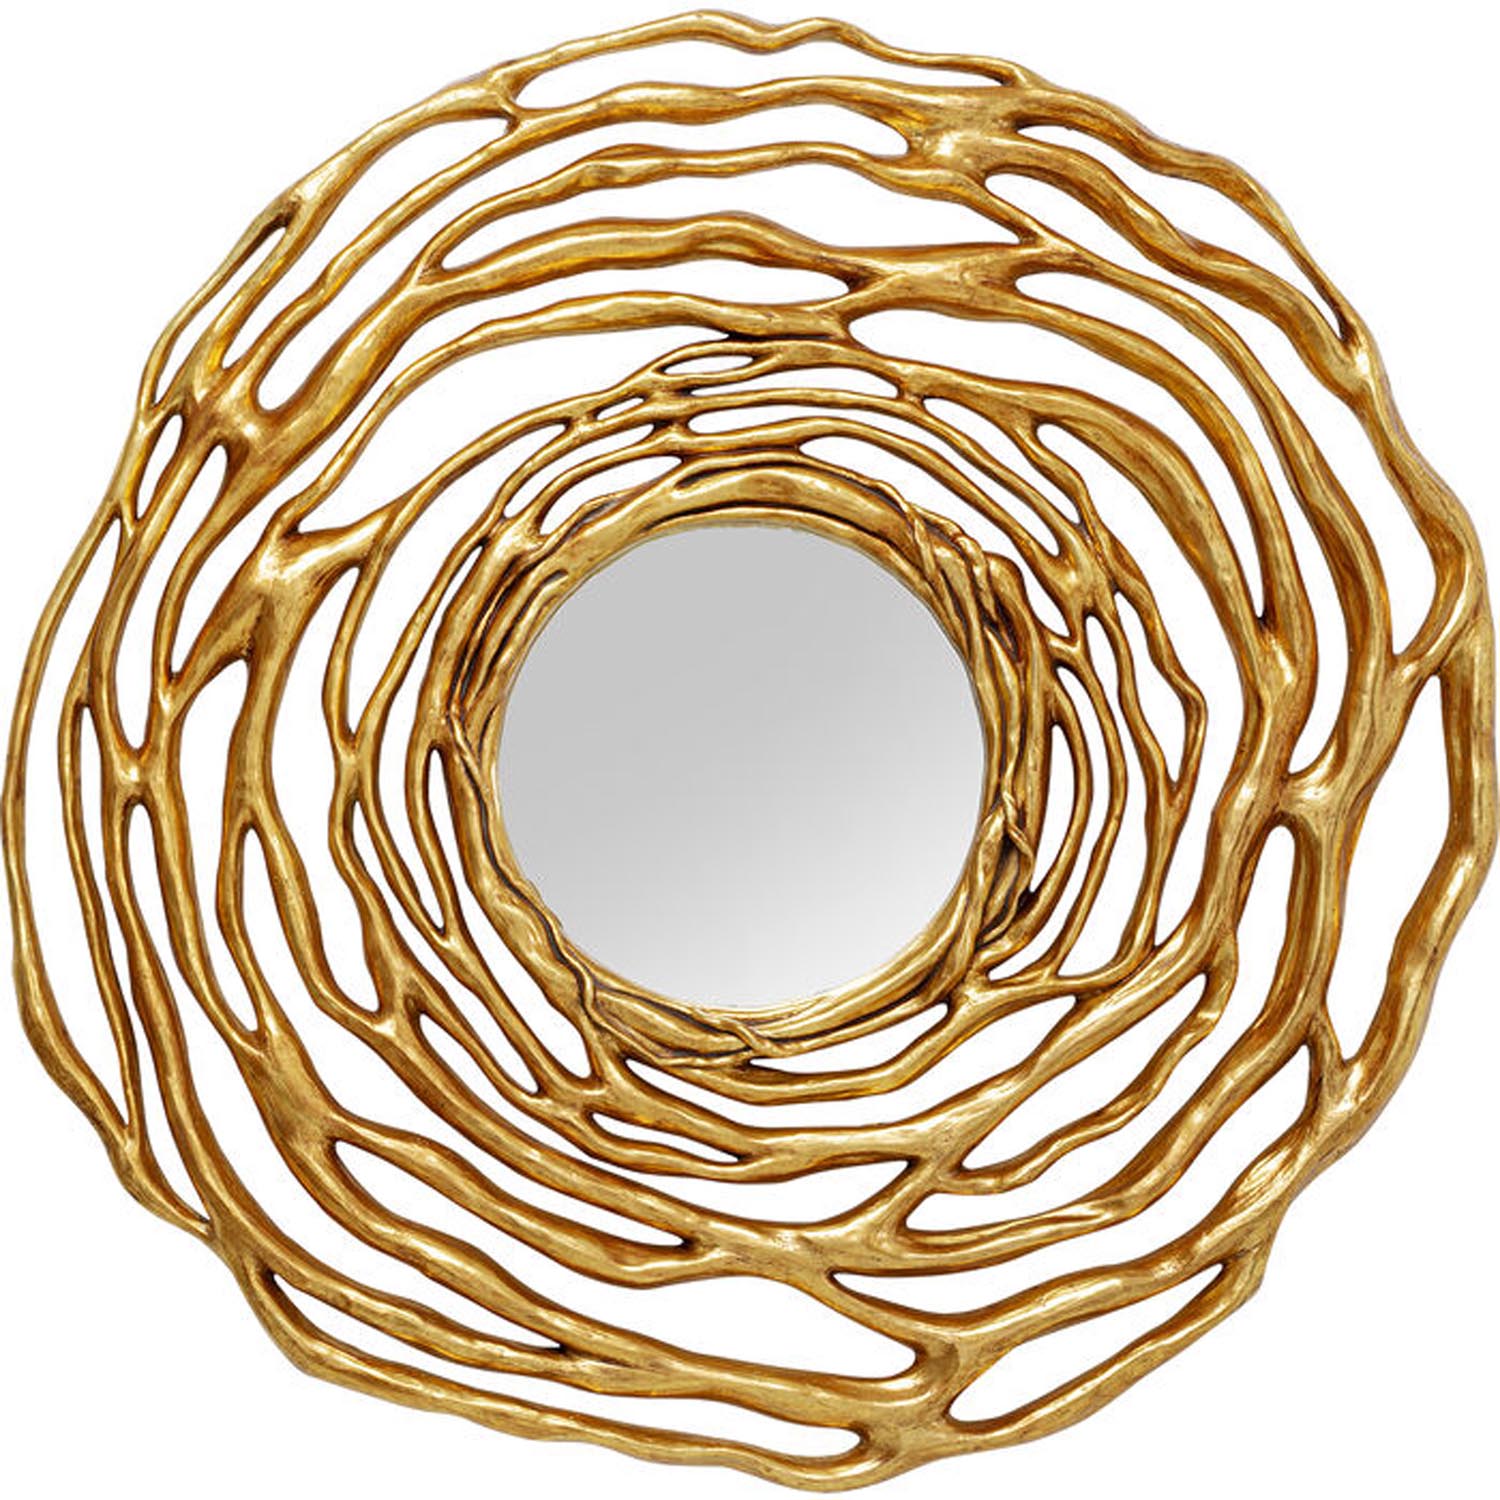 KARE DESIGN Twiggy Gold vægspejl, rund - spejlglas og guld polyresin (Ø121)